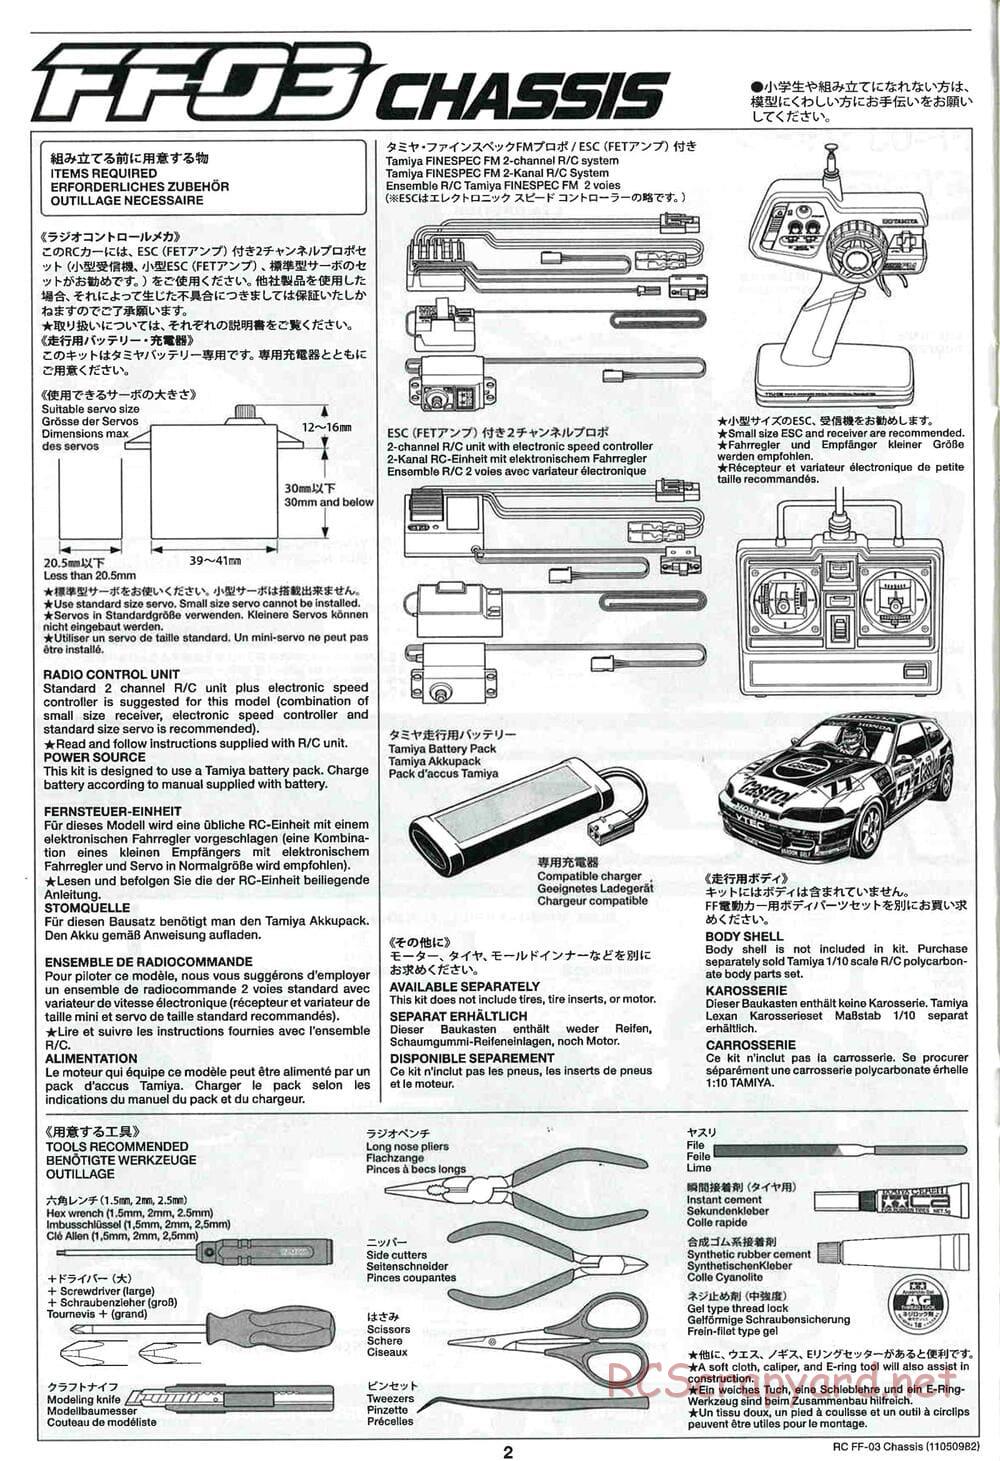 Tamiya - Castrol Honda Civic VTi - FF-03 Chassis - Manual - Page 2